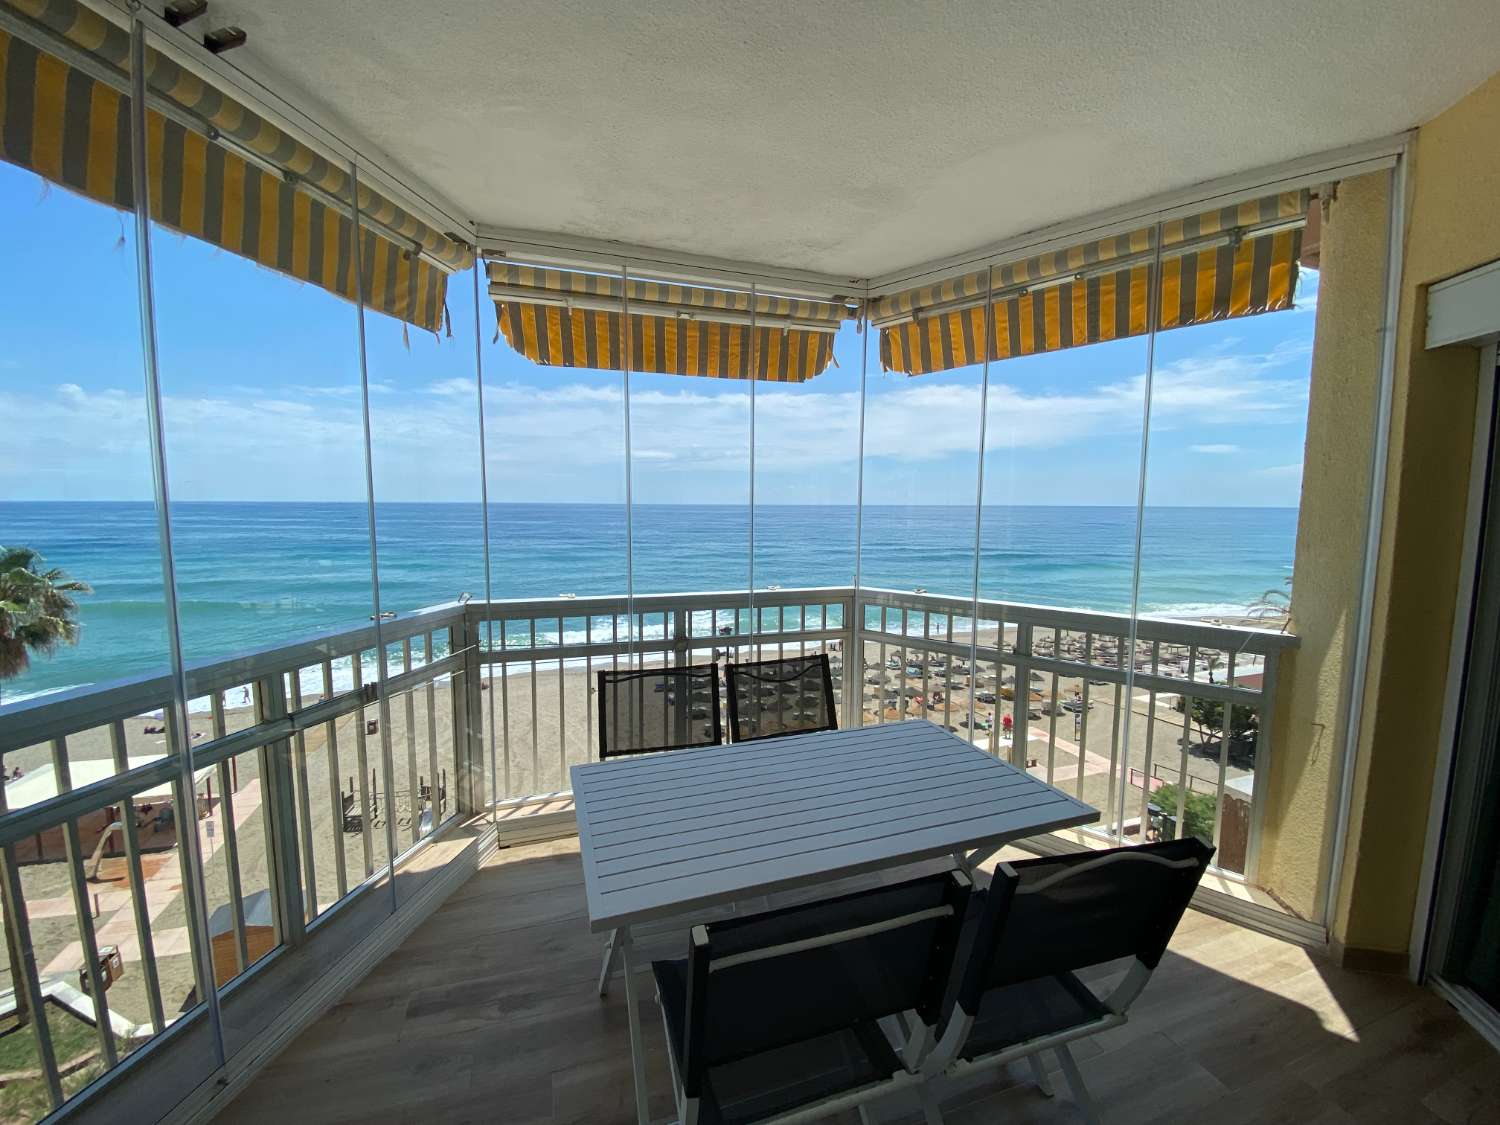 Incredibile appartamento ristrutturato con vista panoramica sul mare: la casa perfetta per gli amanti della spiaggia!&quot;